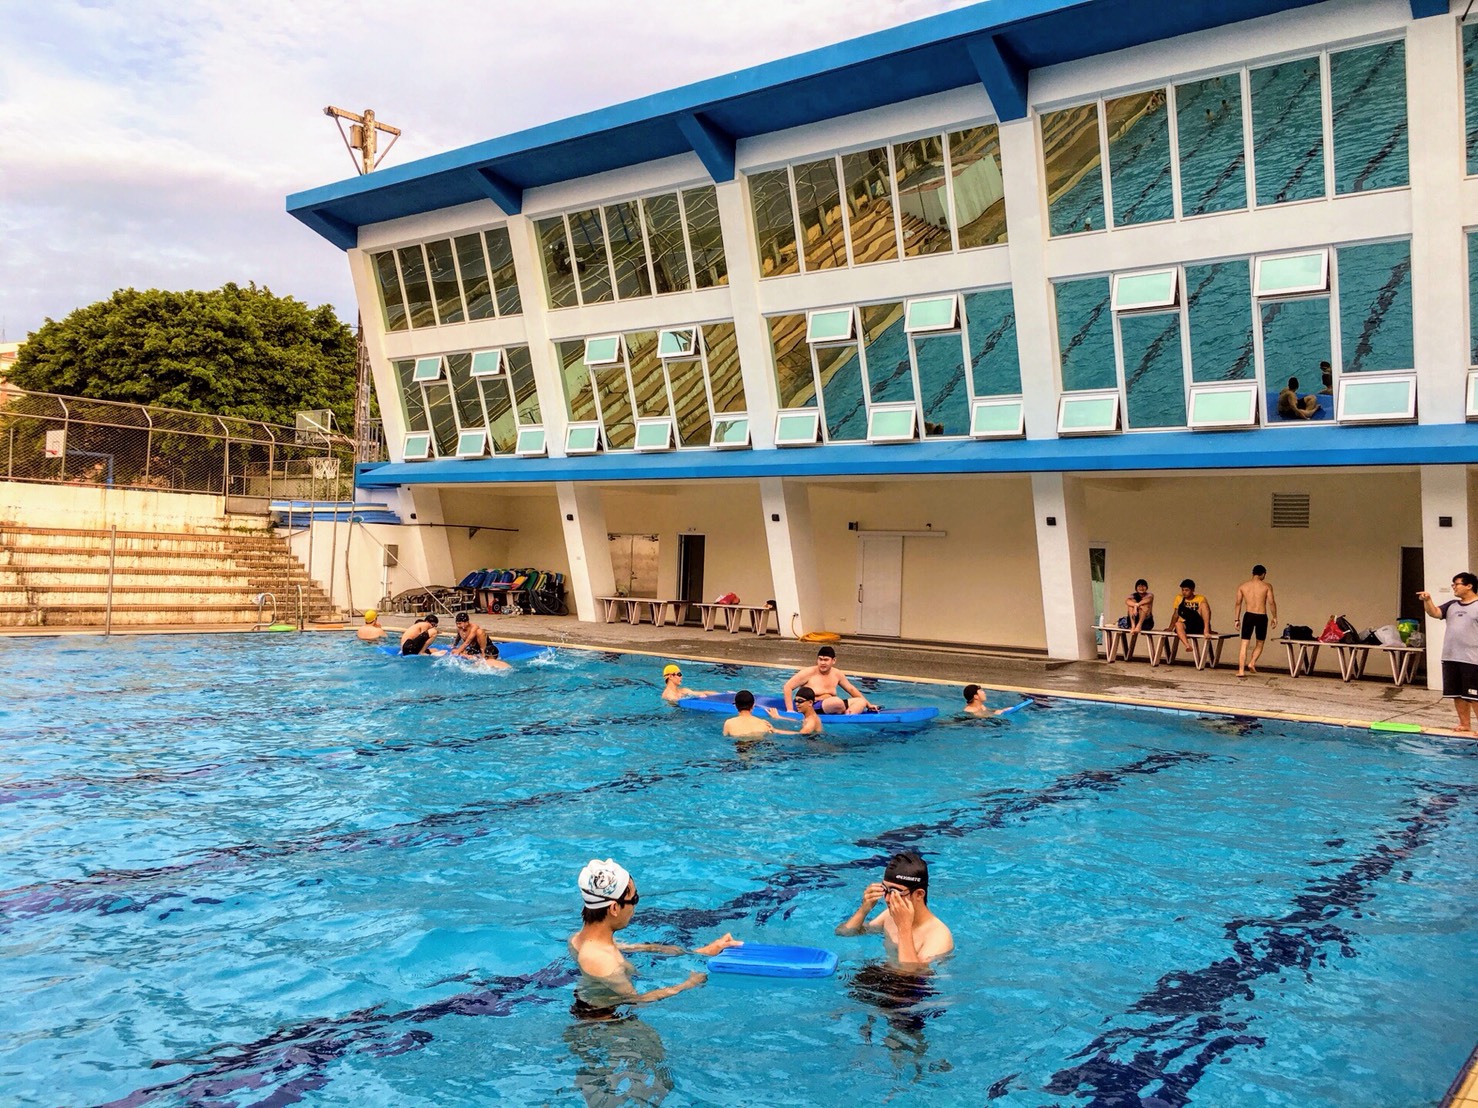 倬雲游泳池提供教職員工、學生及鄰近社區居民從事游泳、競賽等休閒健康活動